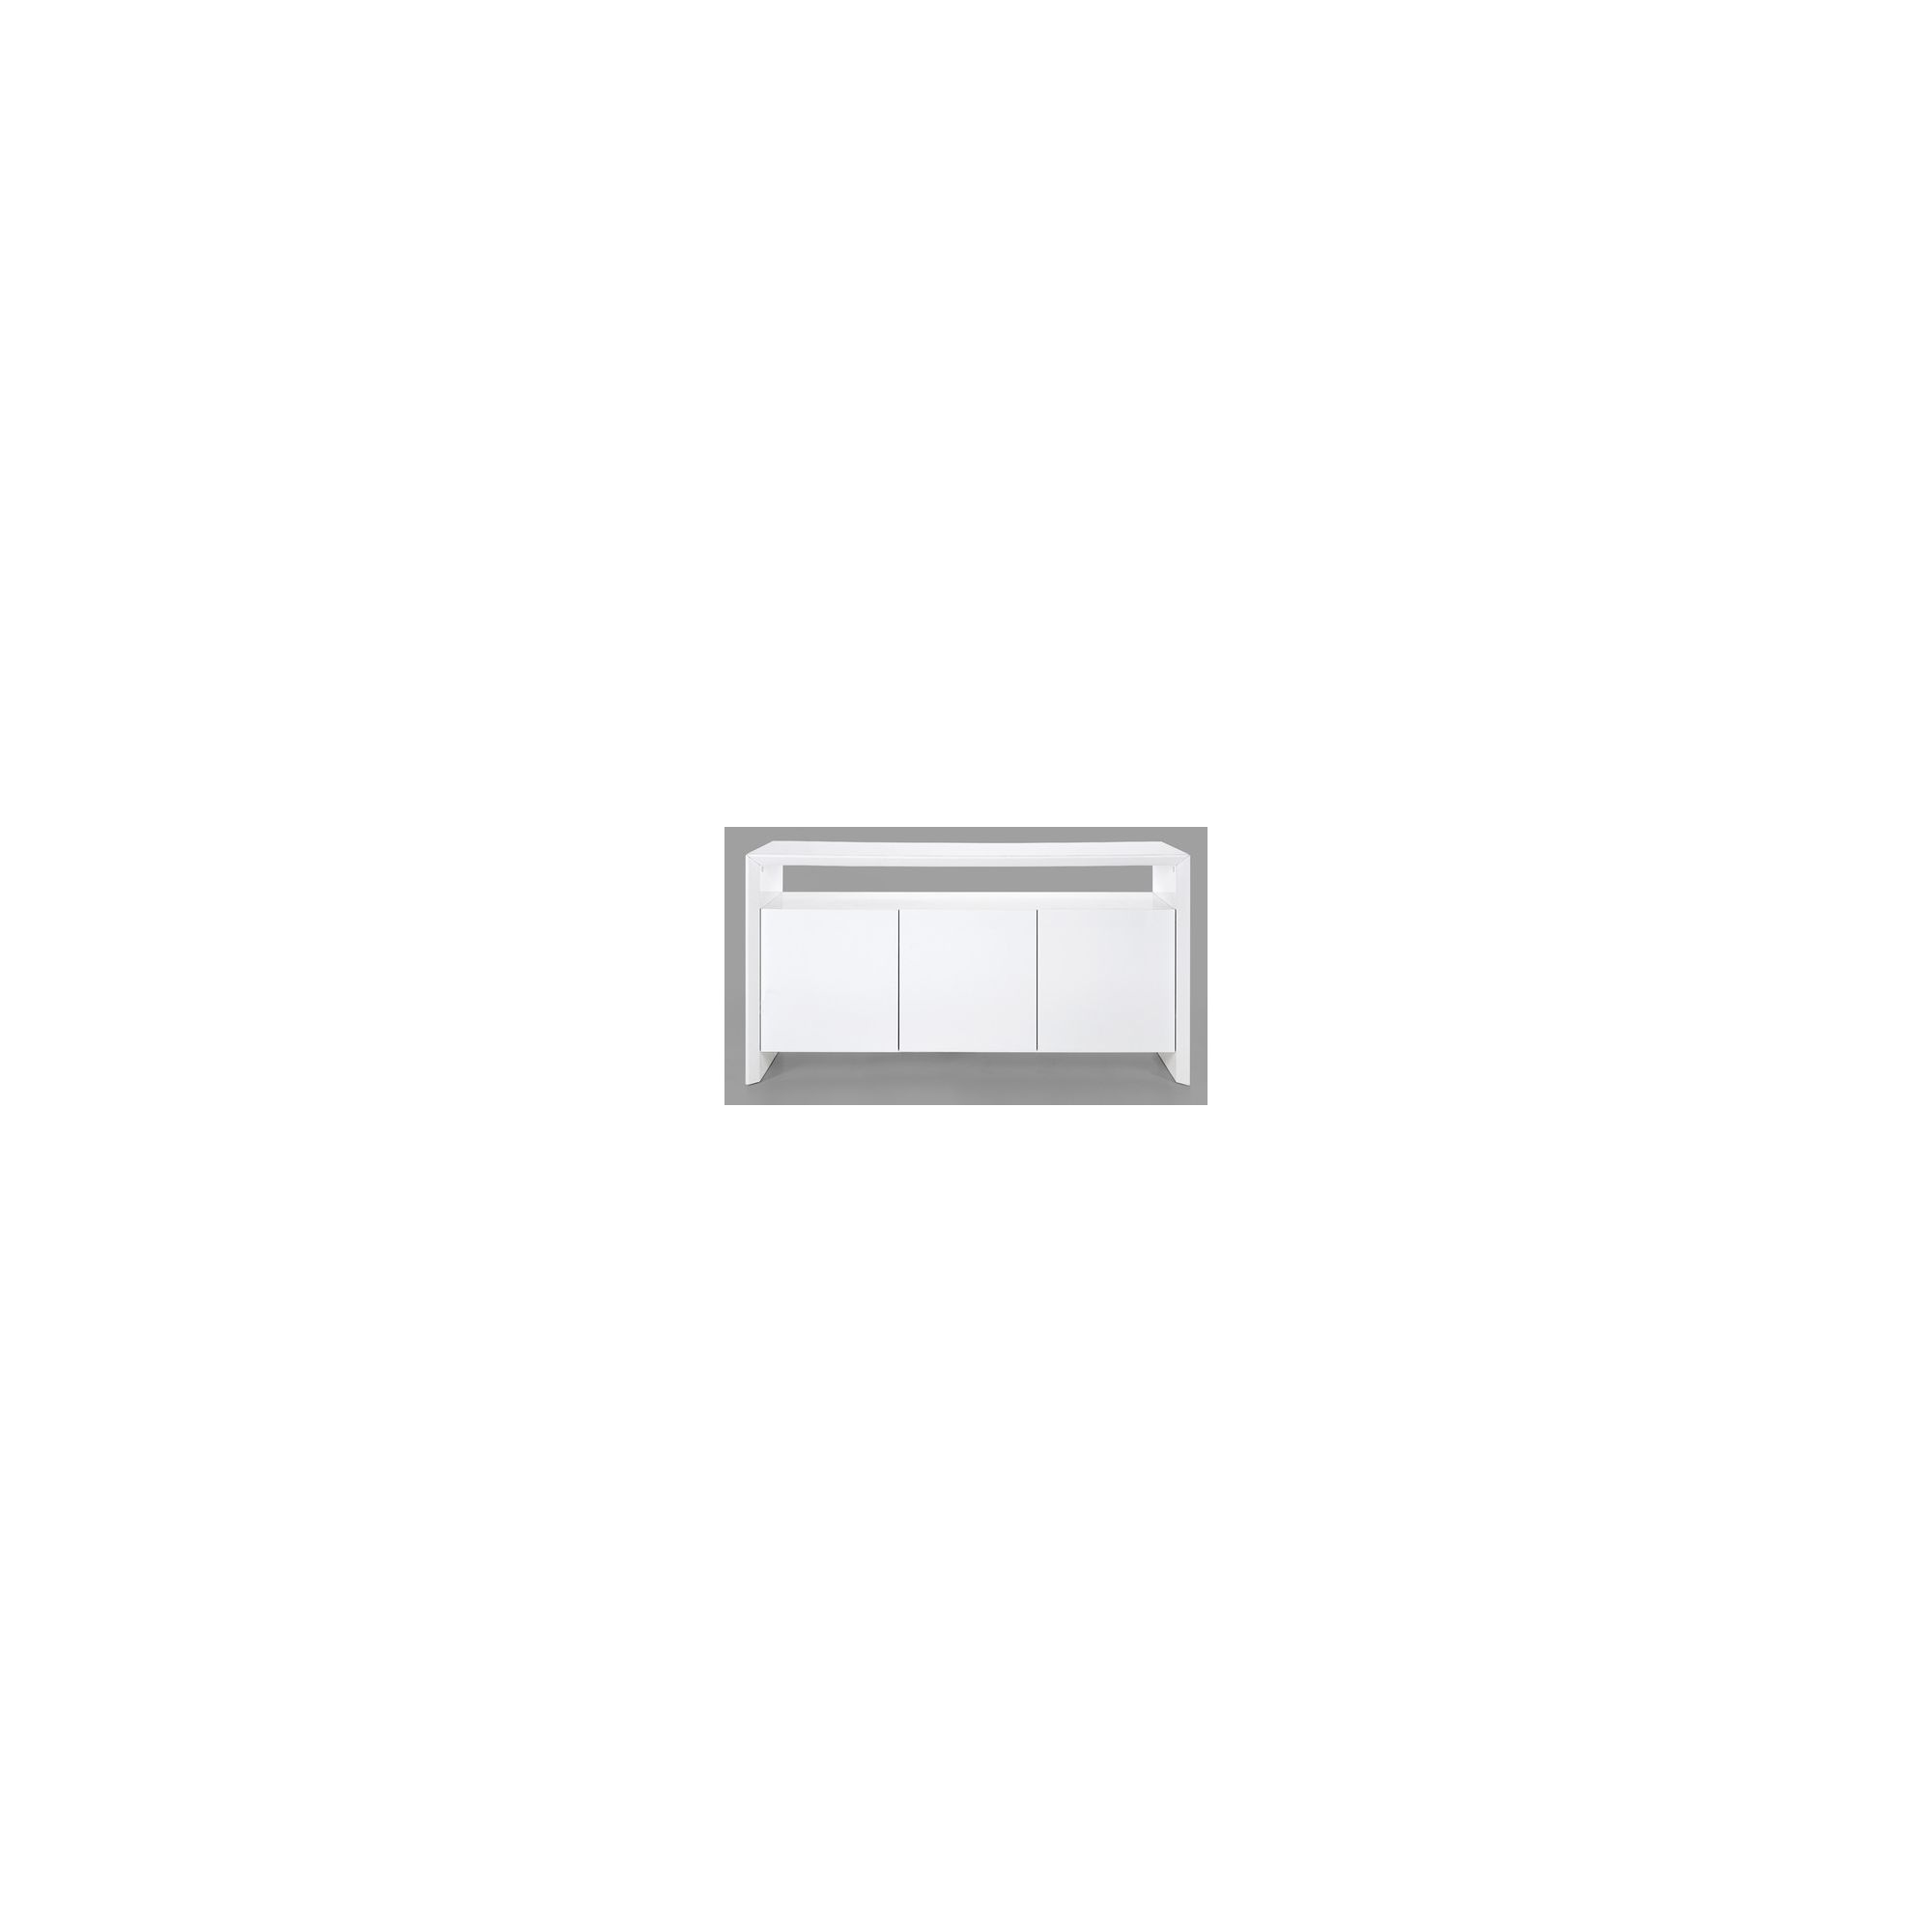 Aspect Design Procopio Sideboard in White at Tesco Direct